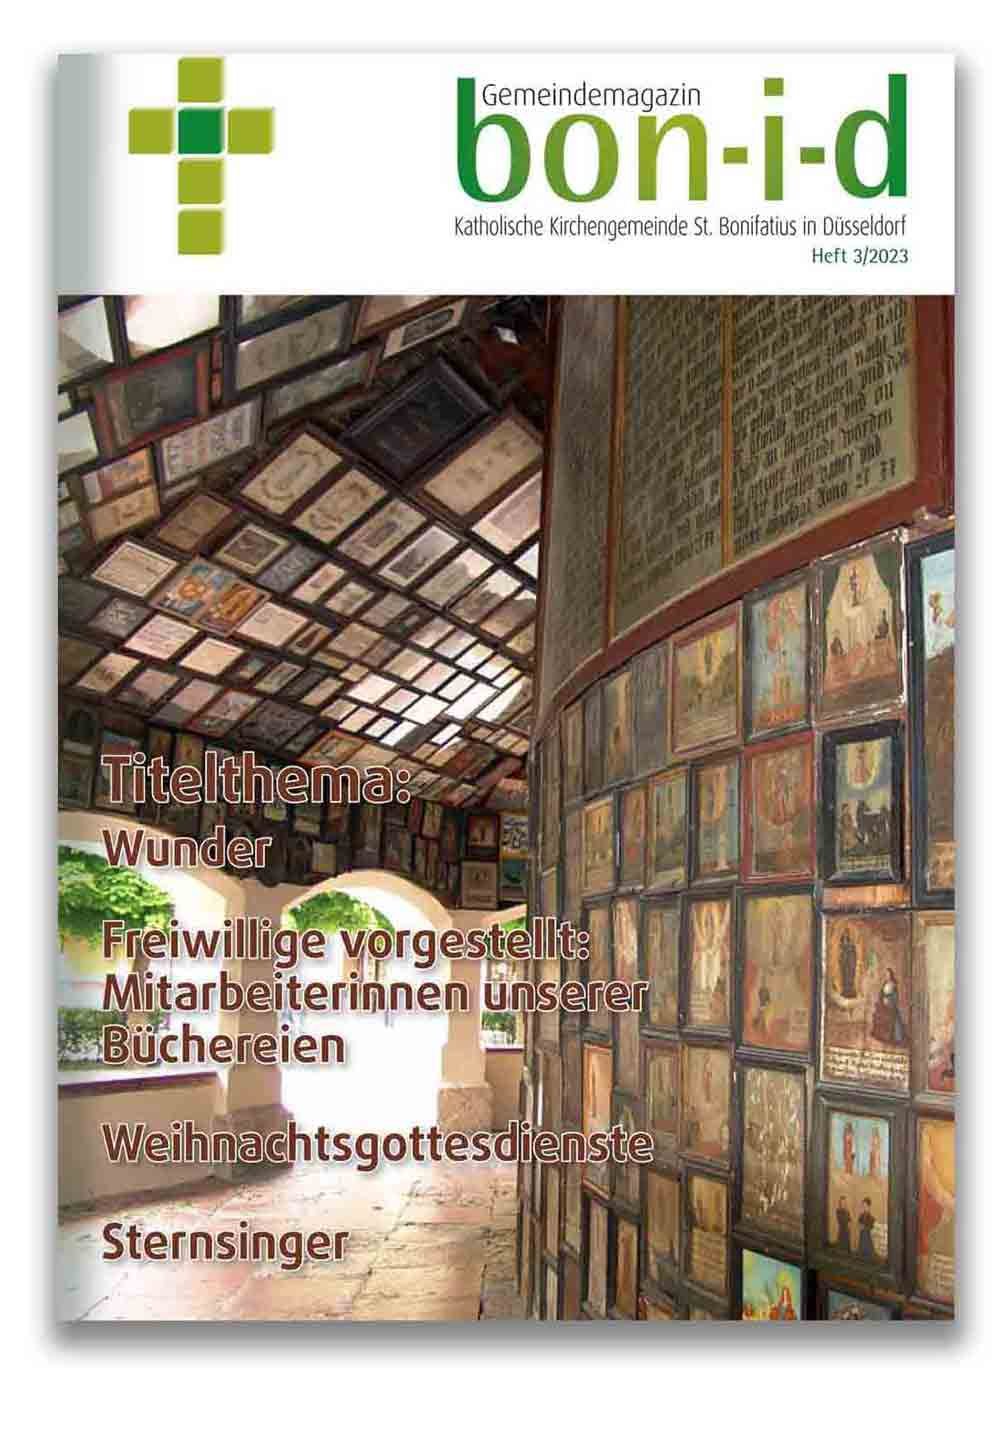 Gemeindemagazin bon-i-d, Titelbild 3/2023 (c) kath. Kirchengemeinde St. Bonifatius Düsseldorf